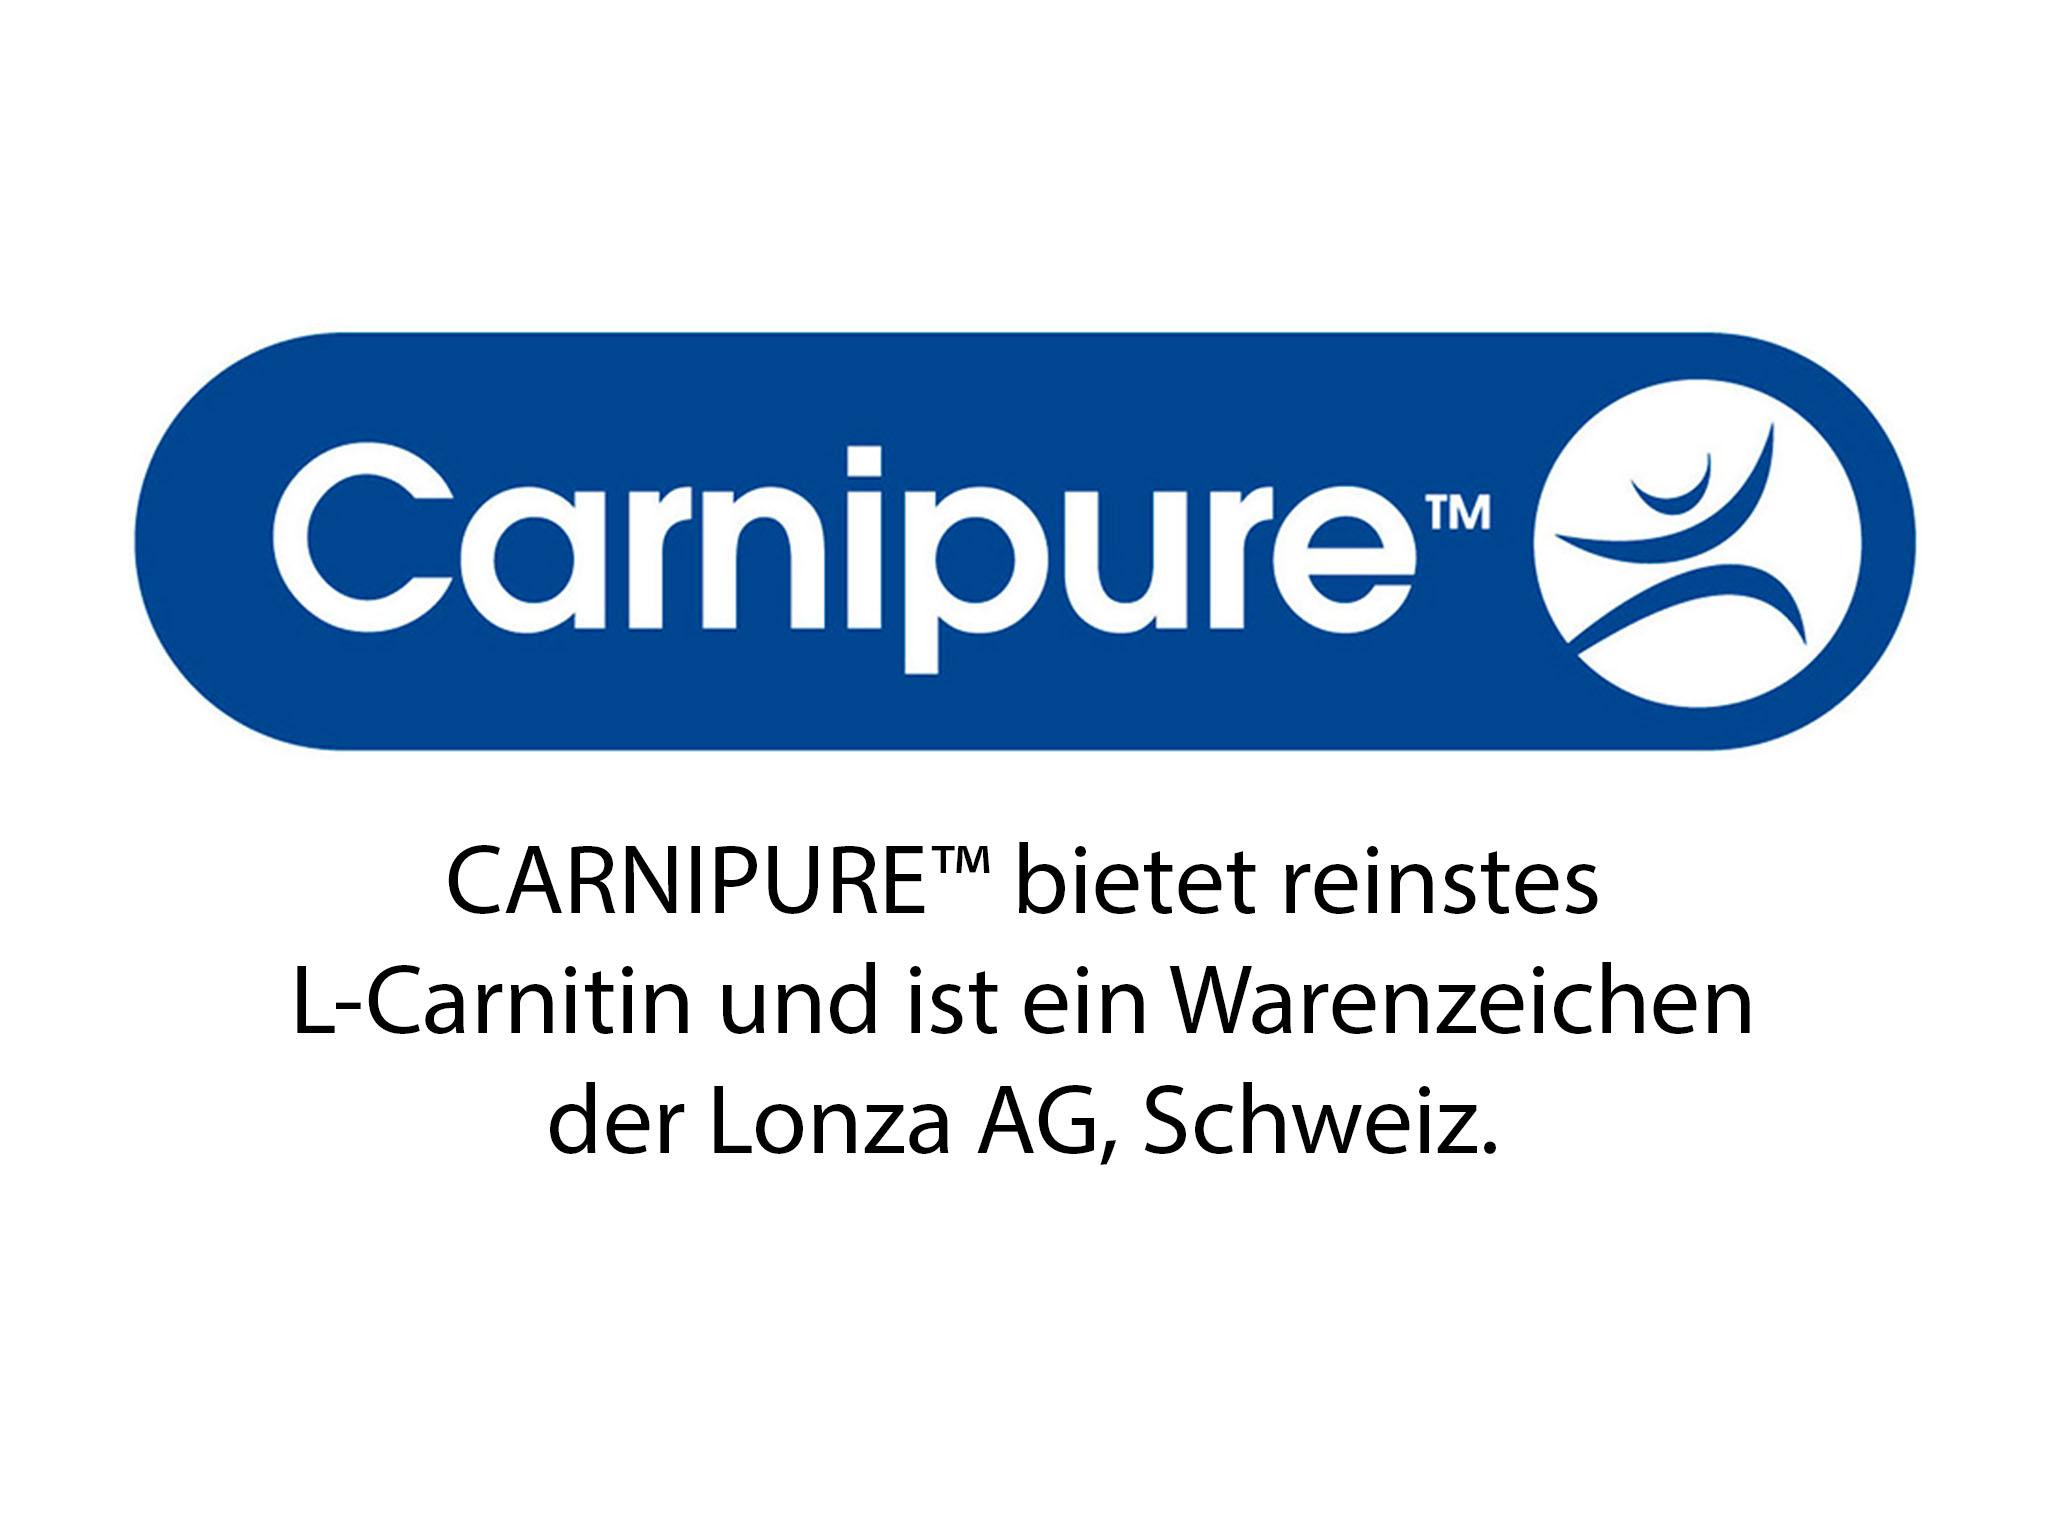 CARNIPURE™ bietet reinstes L-Carnitin und ist ein Warenzeichen der Lonza AG, Schweiz.